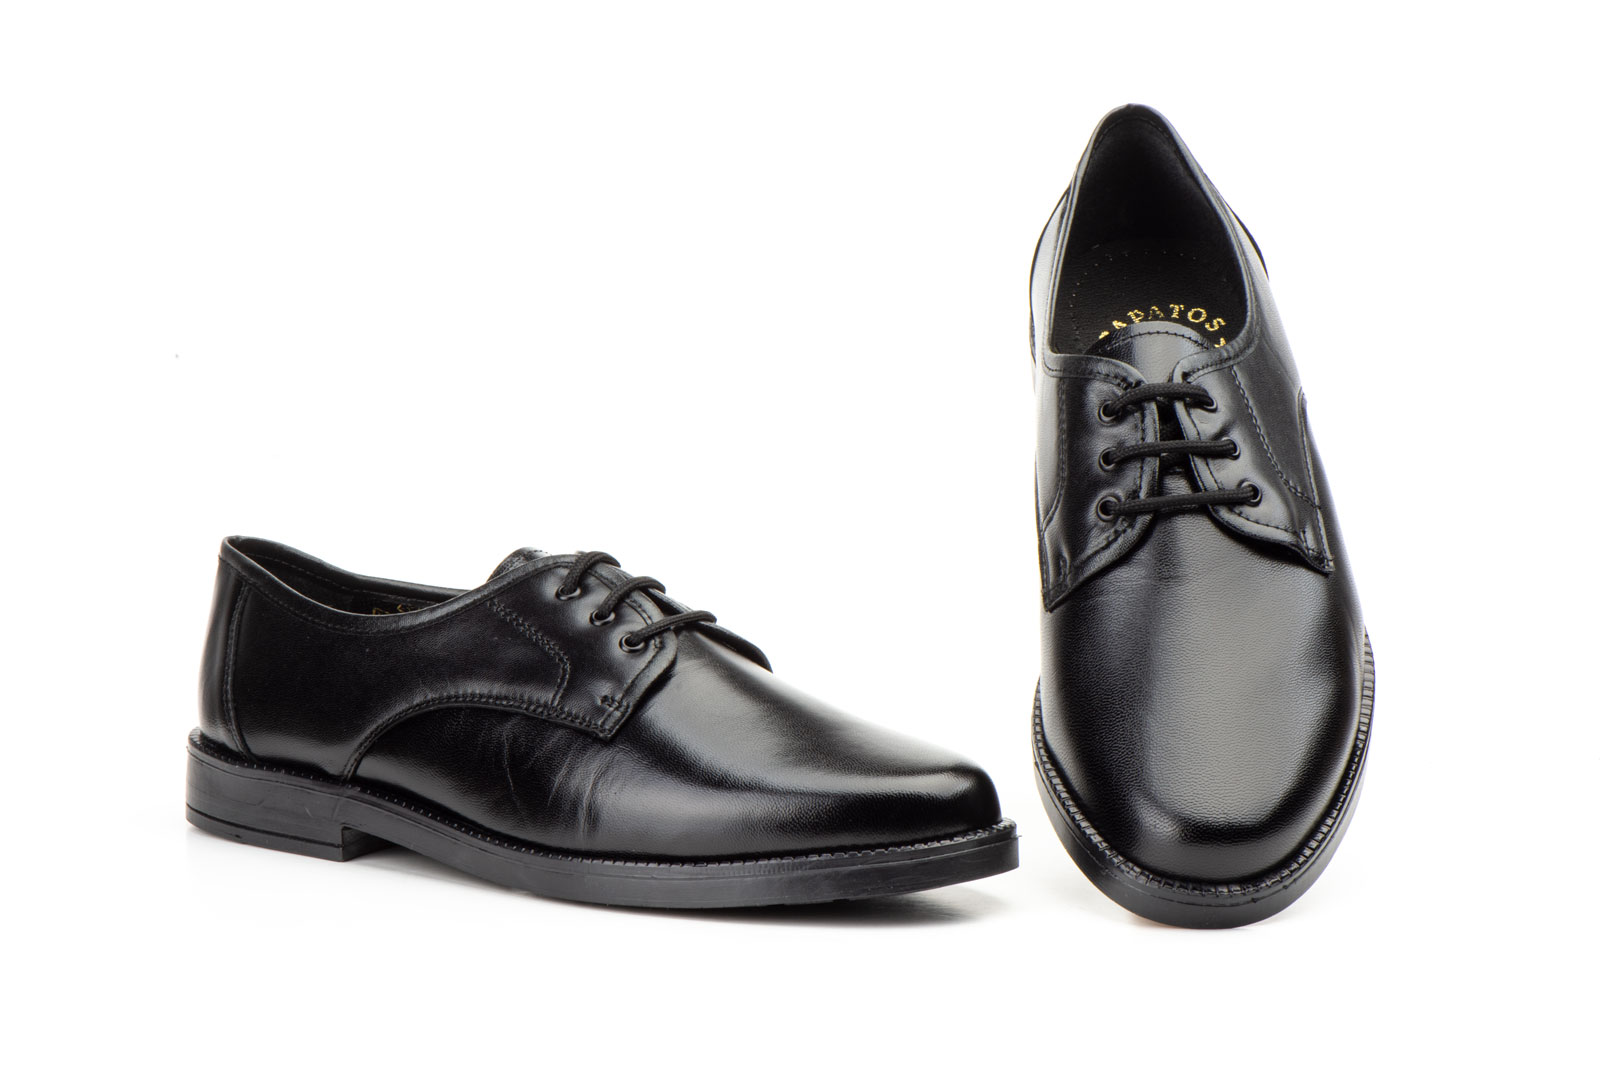 Zapatos Hombre Piel Negro Cordones  -  Ref. 120 Negro